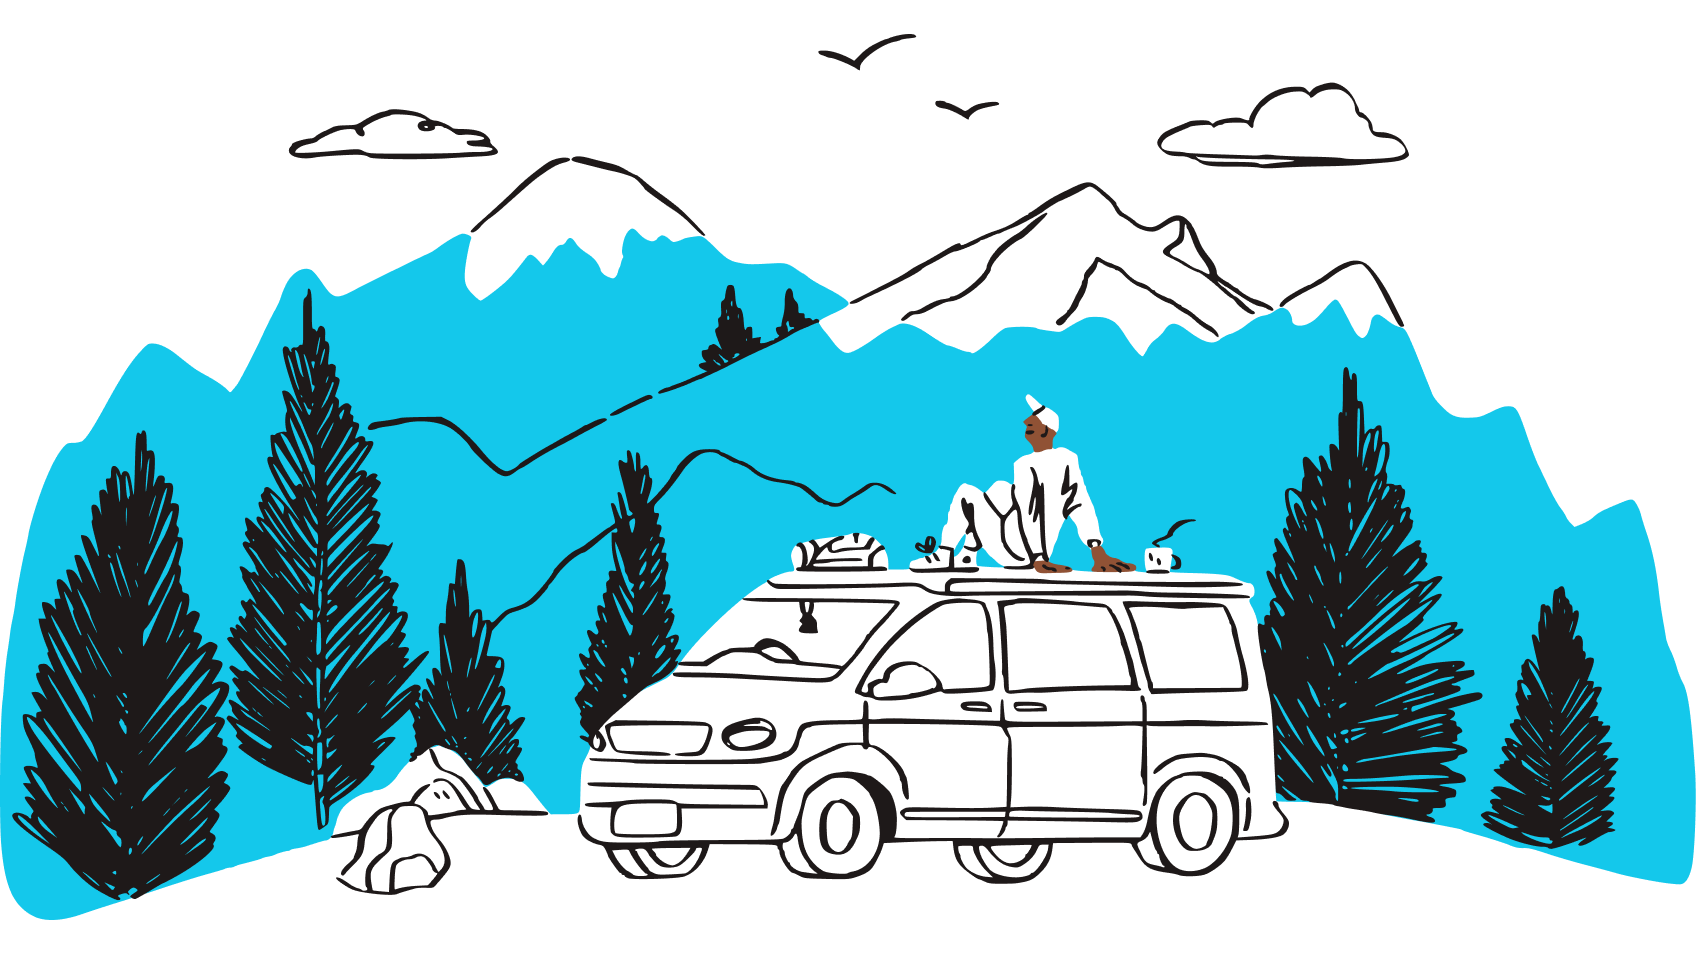 Immagine di una persona seduta sul tetto di un veicolo che ammira la vista di una catena montuosa.